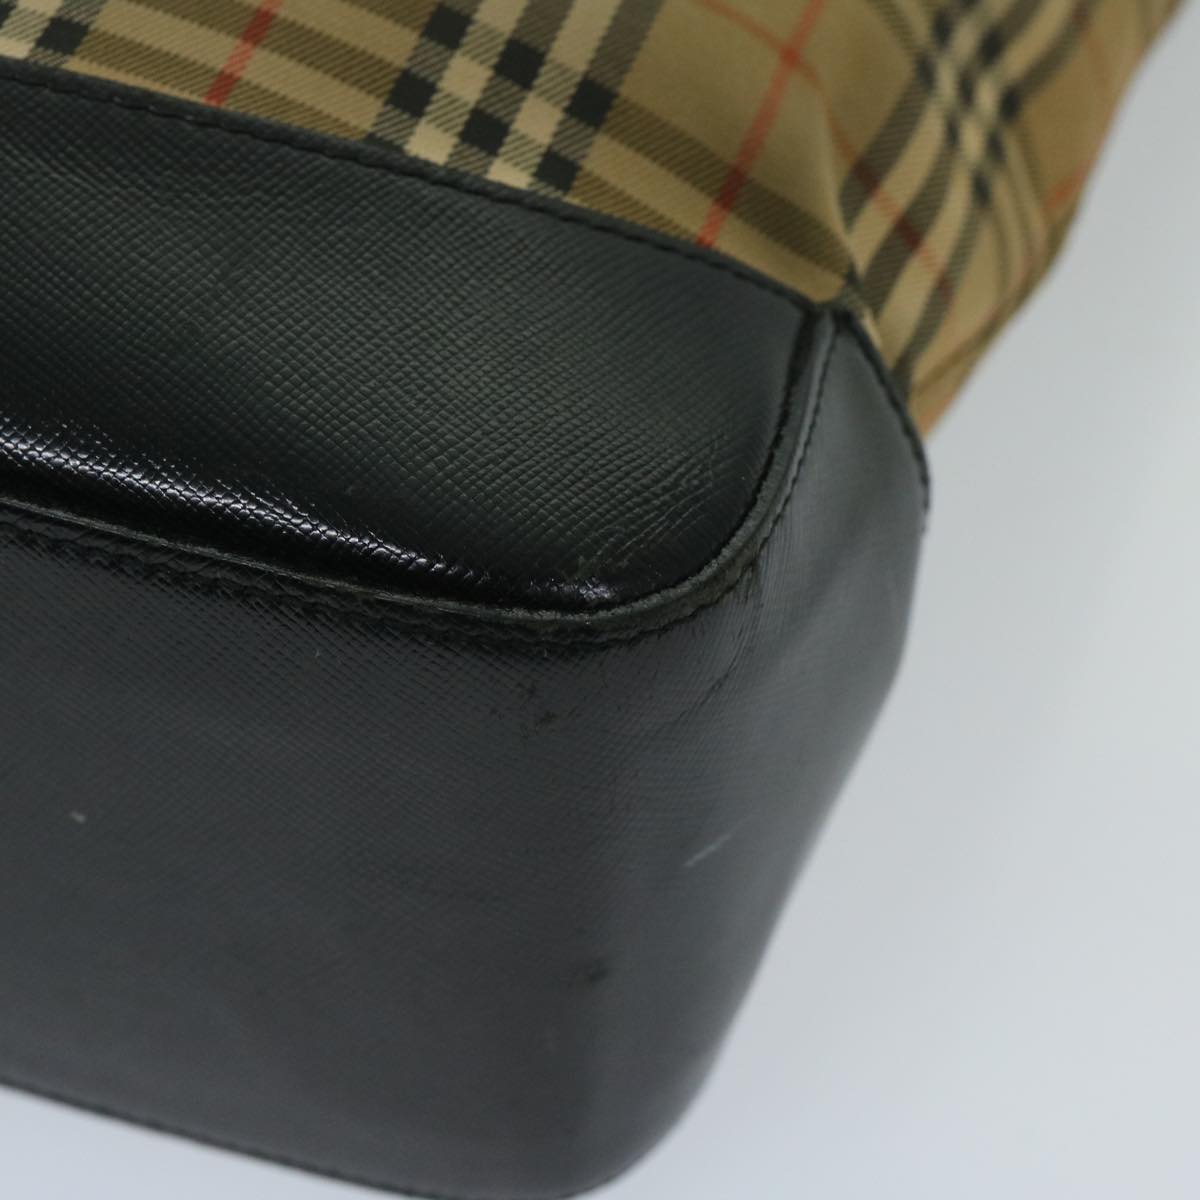 Burberrys Nova Check Shoulder Bag Canvas Beige Black Auth yk11247